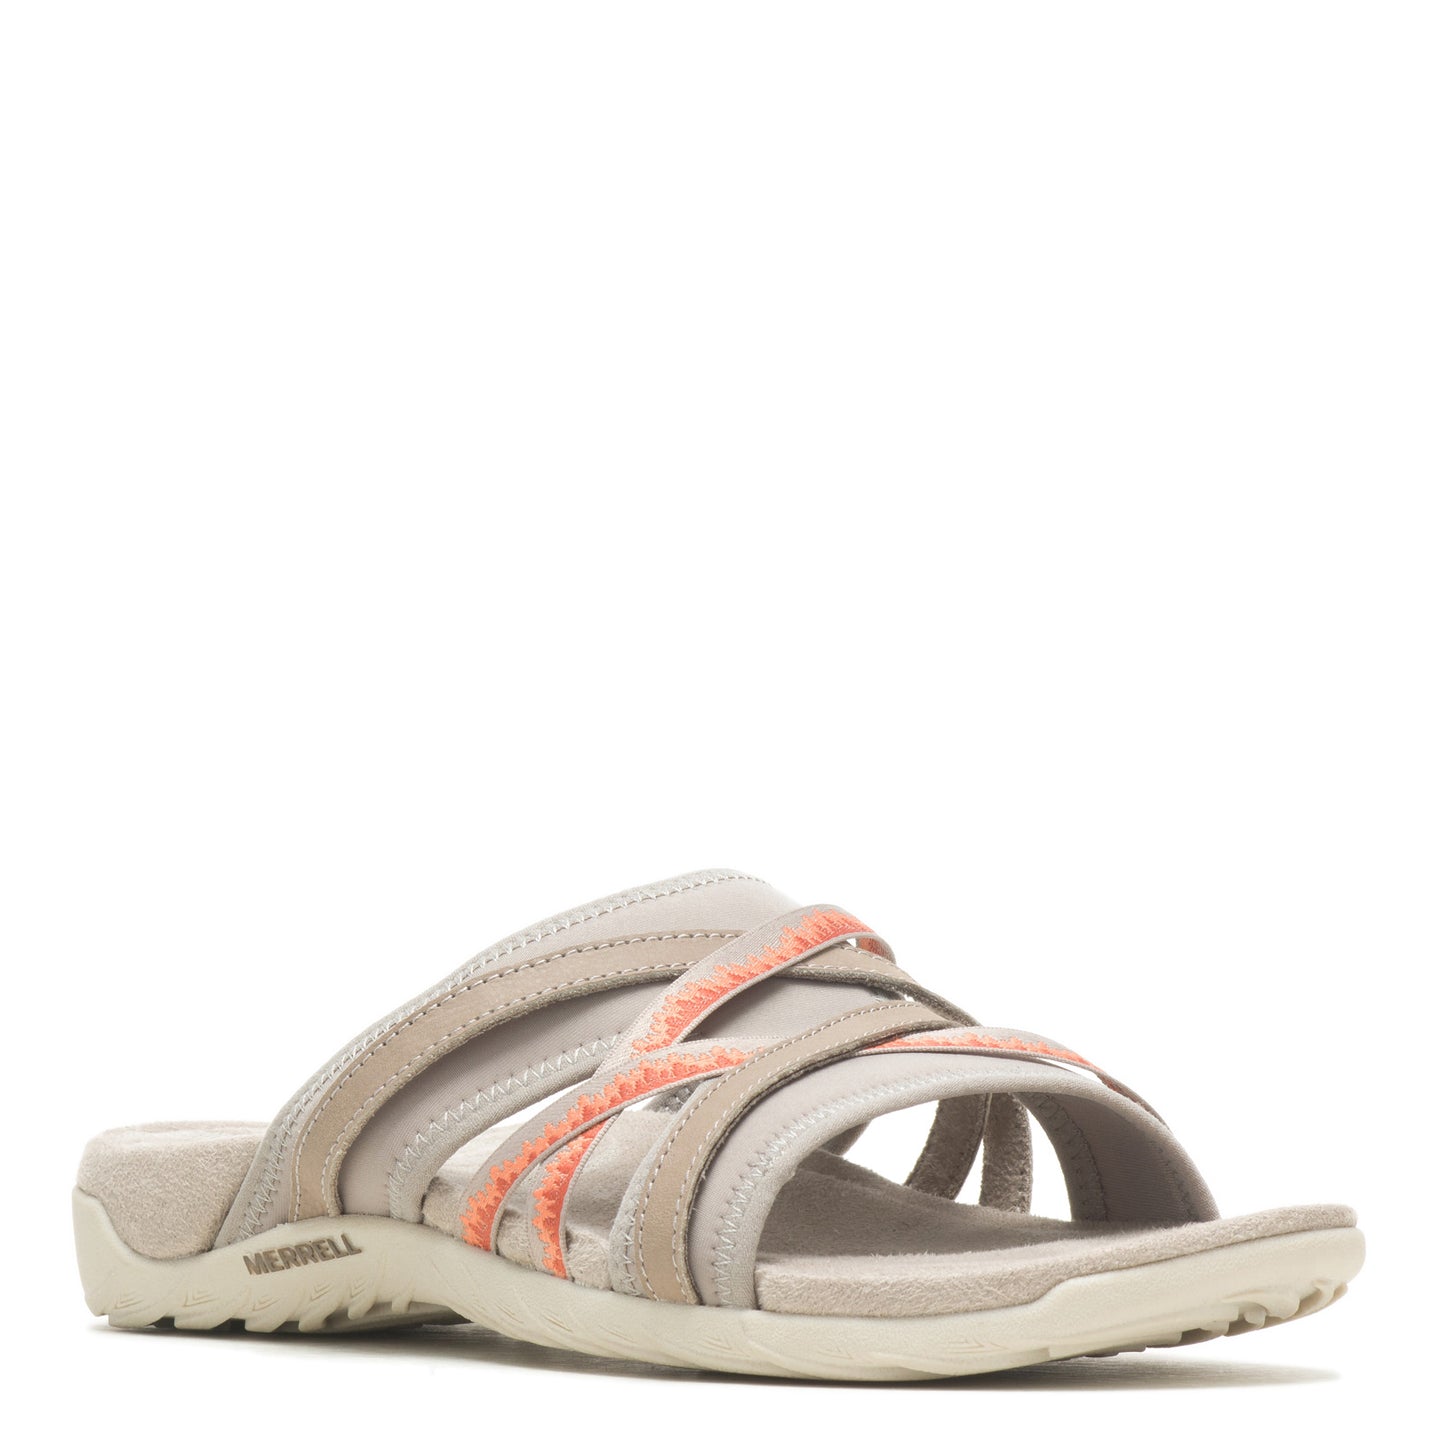 Peltz Shoes  Women's Merrell Terran Cush 3 Slide Sandal MOONROCK J005676